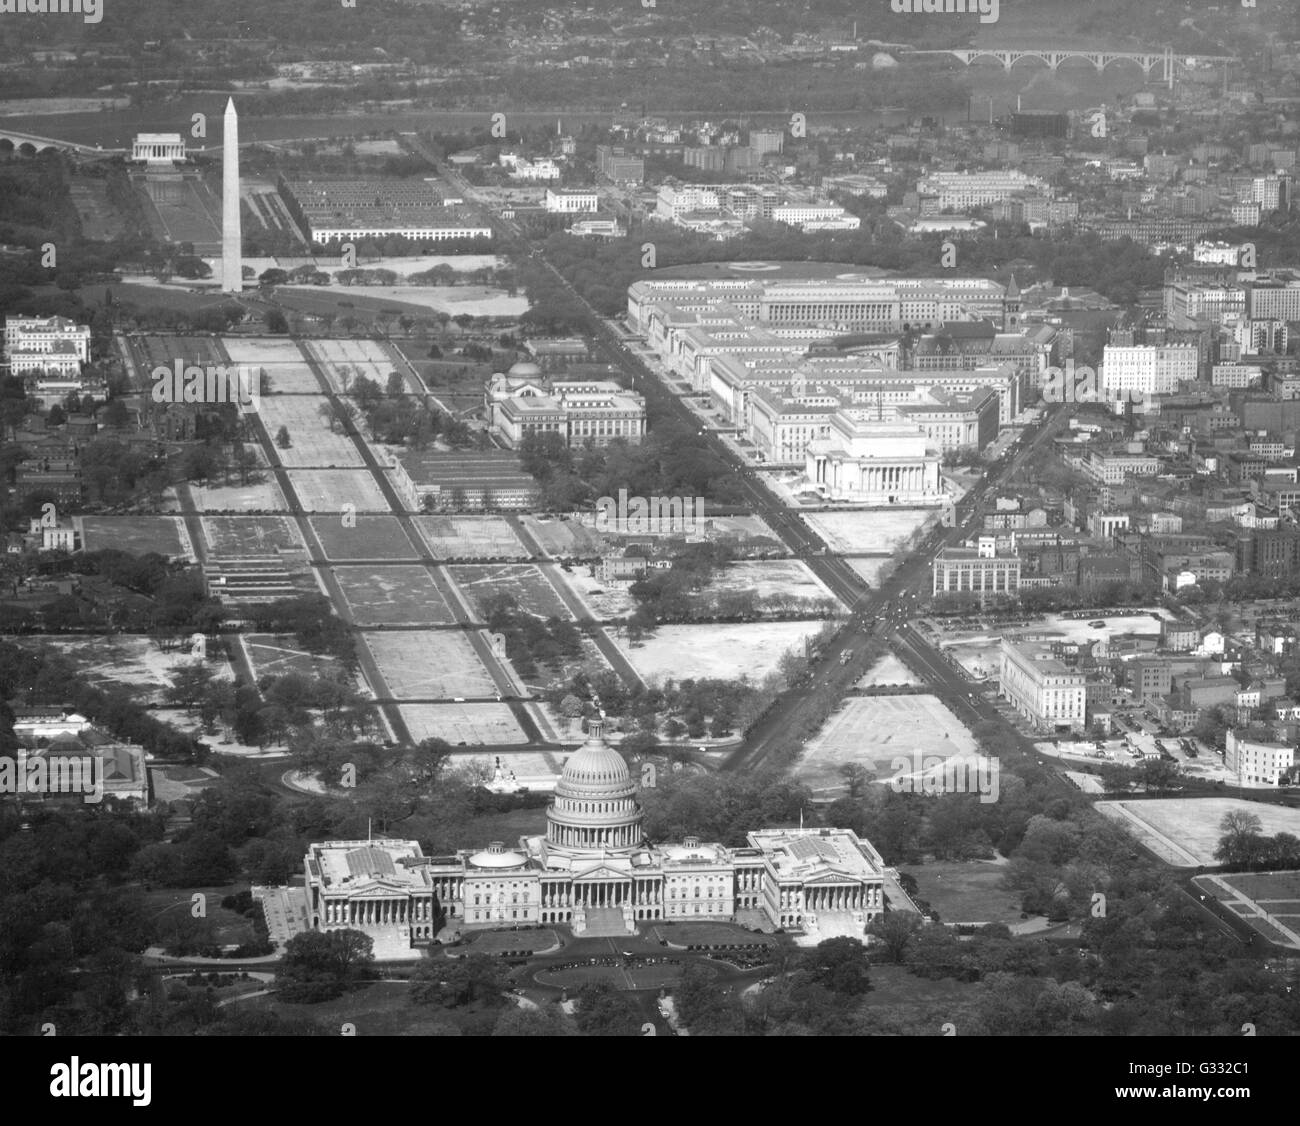 Vue aérienne de la Federal Triangle (en haut à droite) avec le United States Capitol en premier plan, Washington, DC, vers 1940. Le Washington Monument se trouve dans le coin supérieur gauche. Banque D'Images